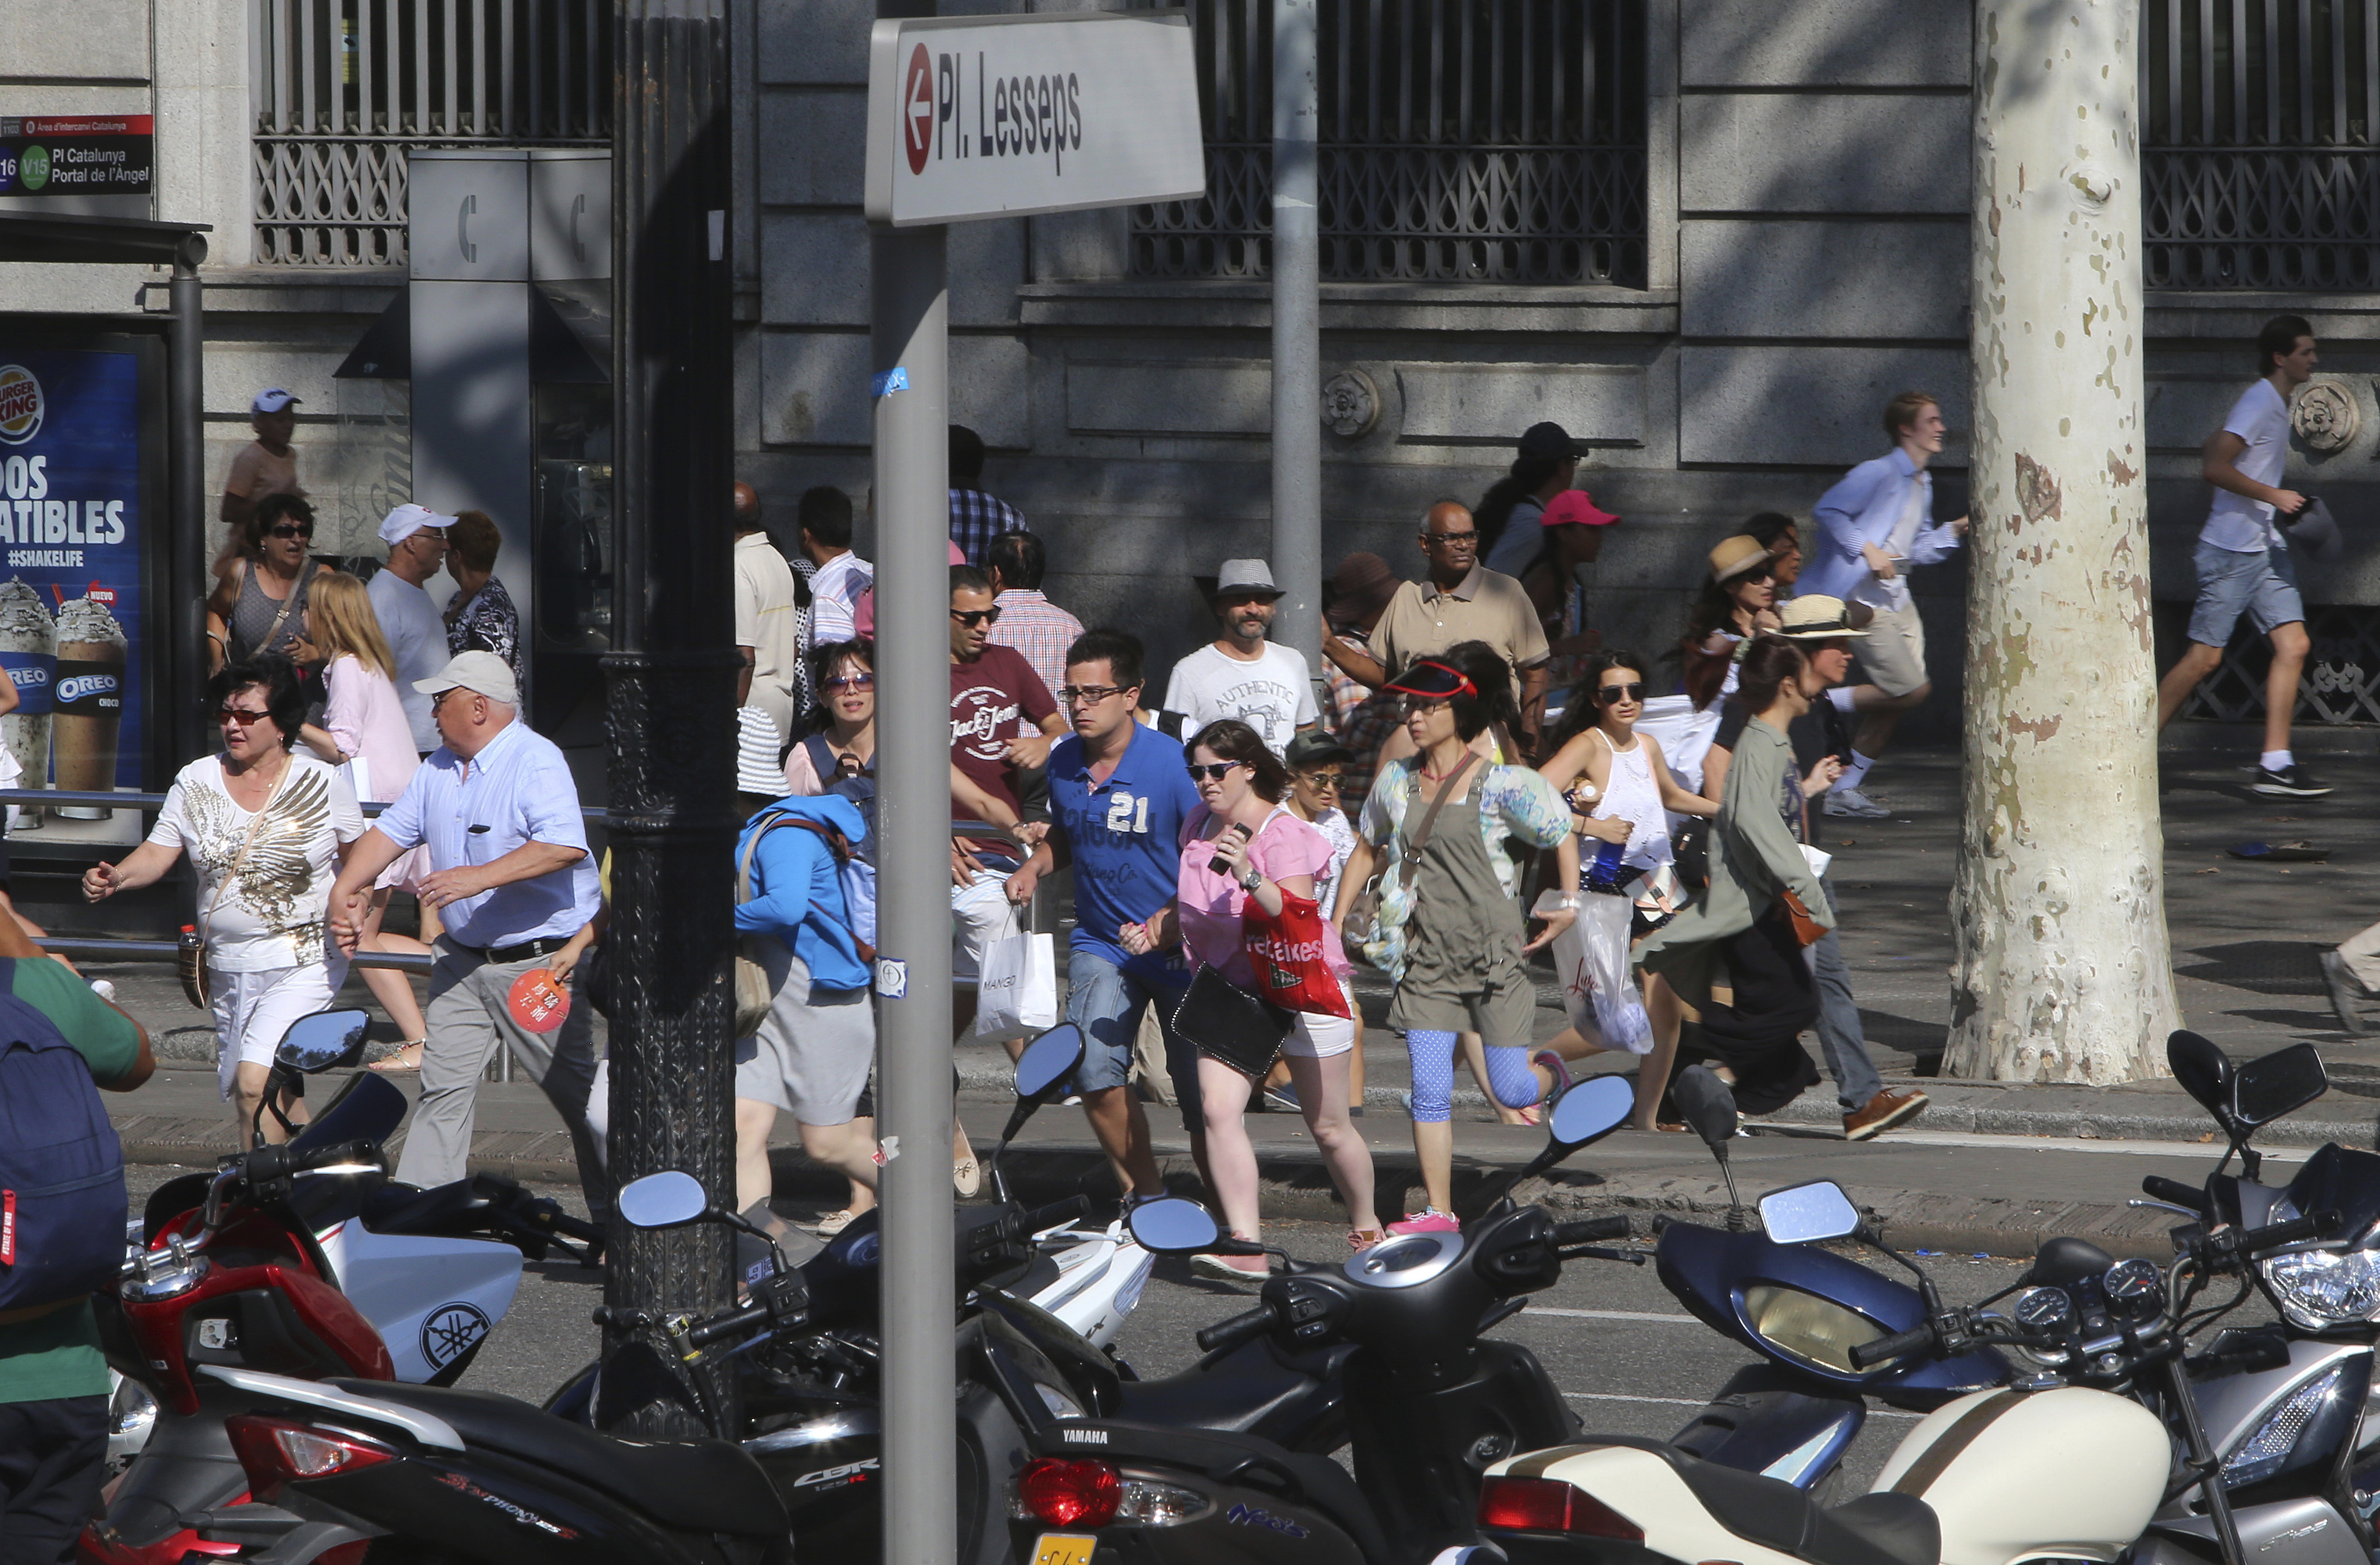 Микробус се вряза в множеството на ул. Рамбла в Барселона на 18 август